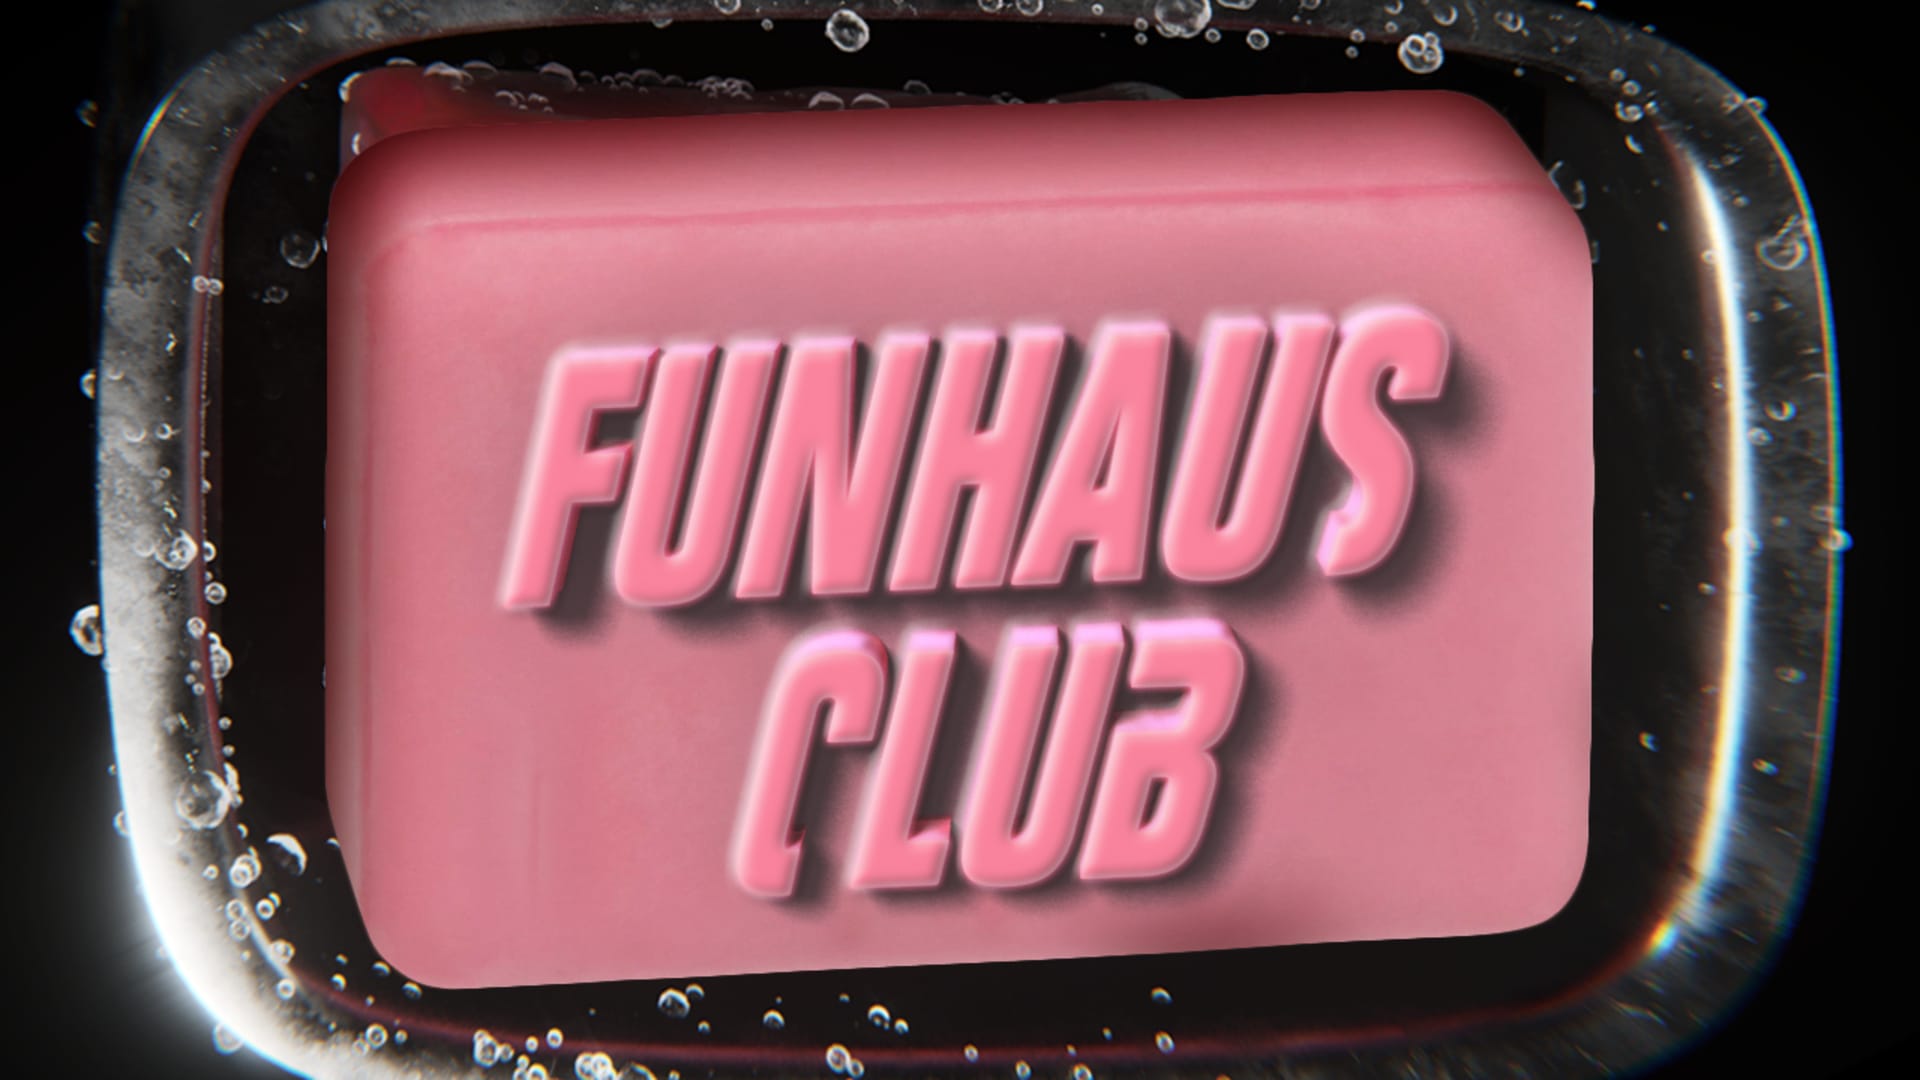 Funhaus Enamel Logo Pin Set